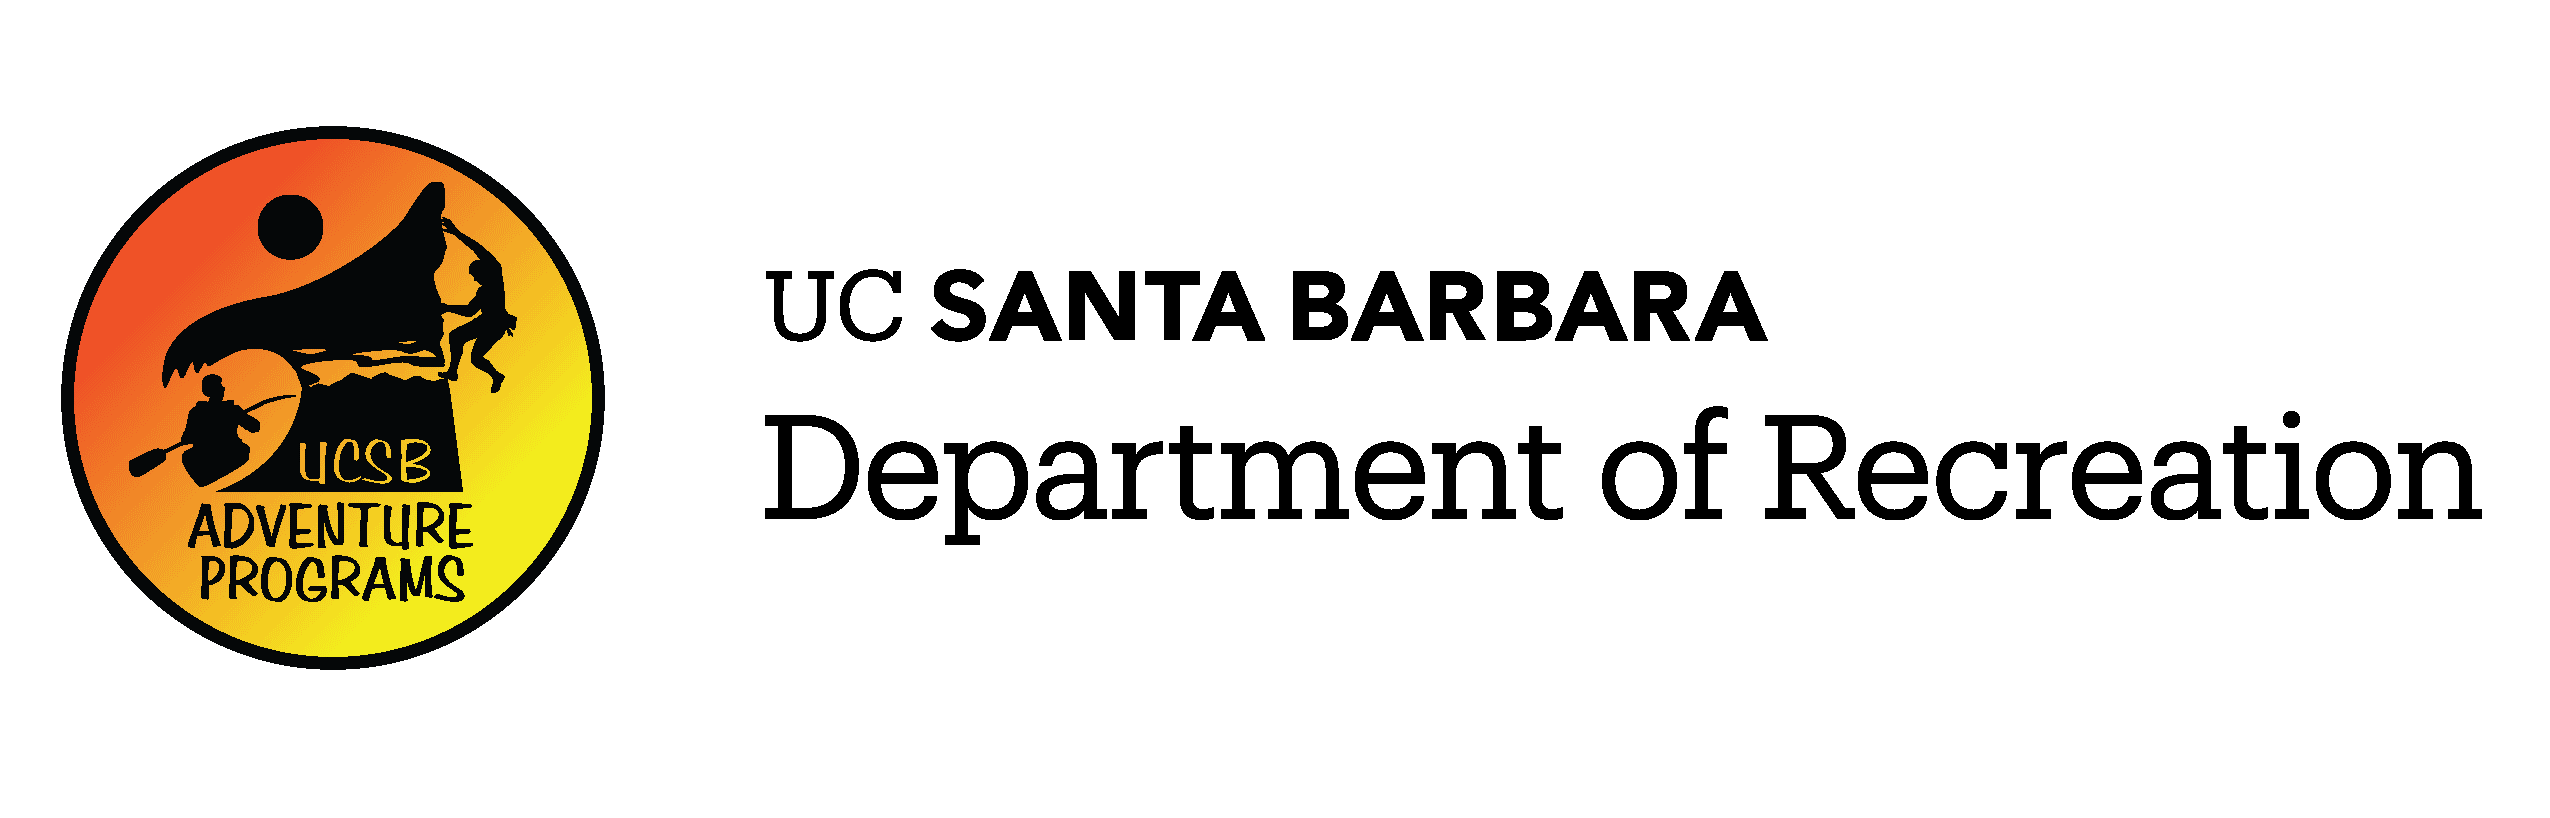 University of California Santa Barbara Department of Recreation